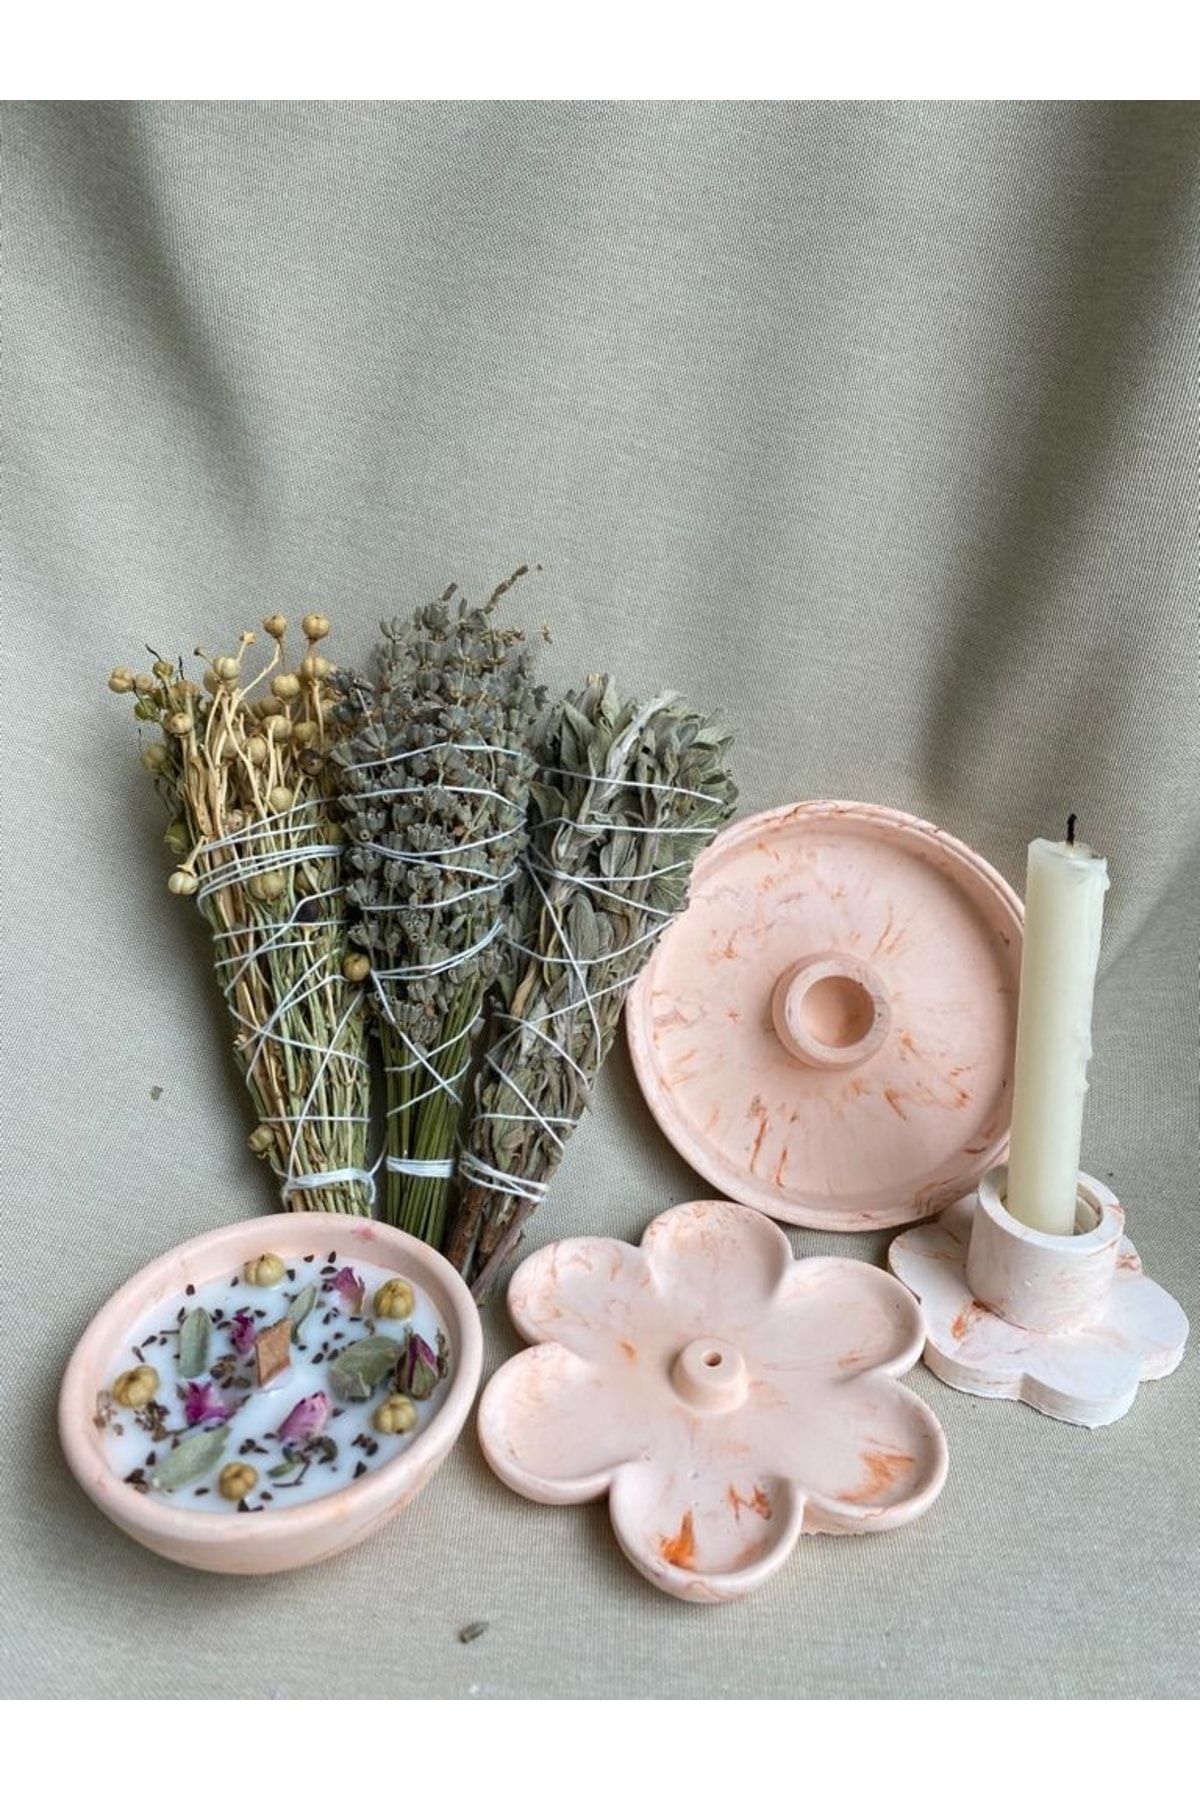 Agave Atelier Ritüel Hediye Seti: Çiçek Tütsülük, Tütsülük Kabı, Ritüel Mum, Çiçek Şamdan Ve 3'lü Tütsü Seti